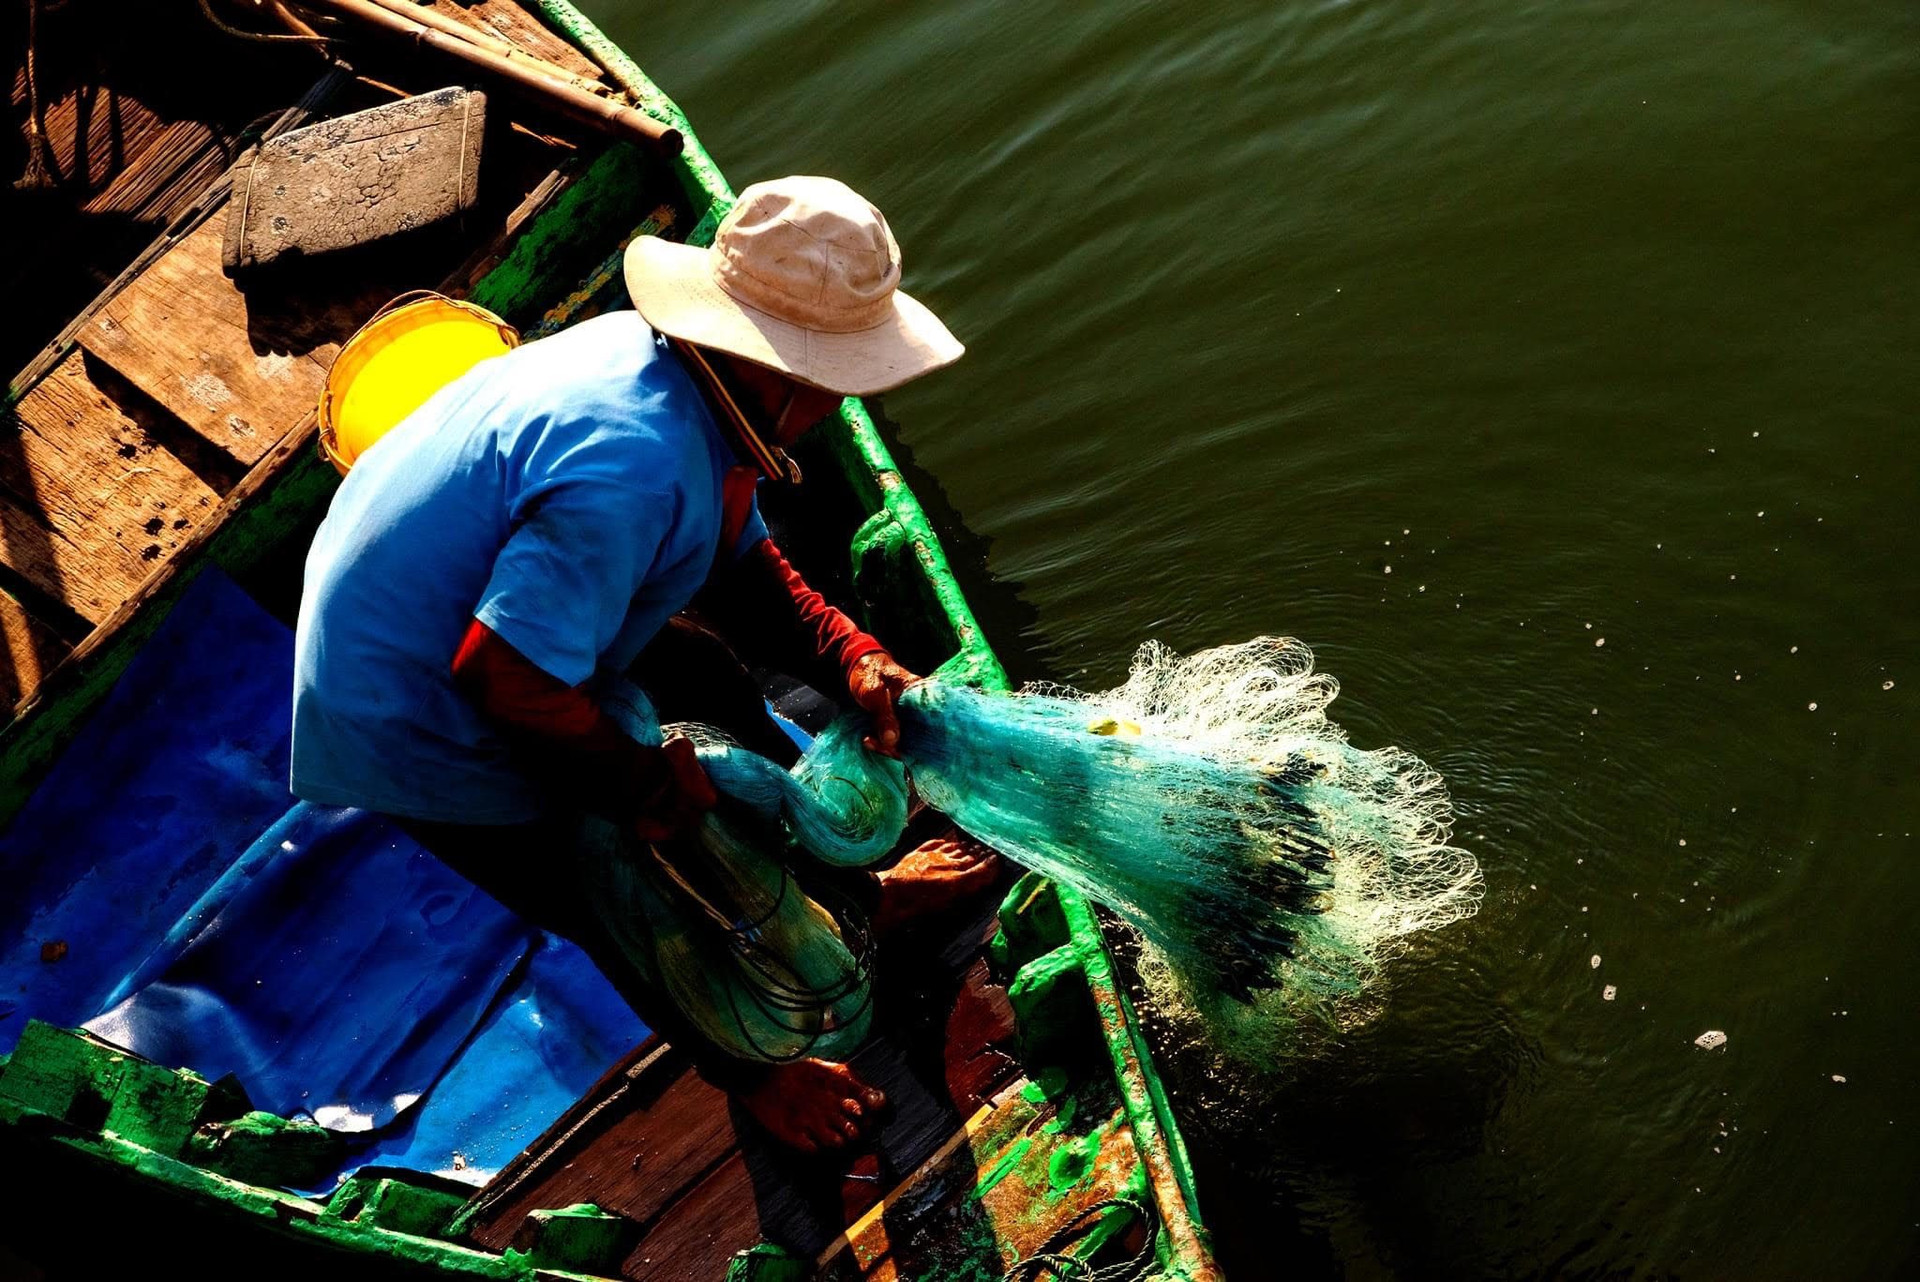 Một dòng sông nổi tiếng dài 76km qua thành phố Phan Phiết của Bình Thuận, có 2 vợ chồng hơn 30 năm đánh cá- Ảnh 8.